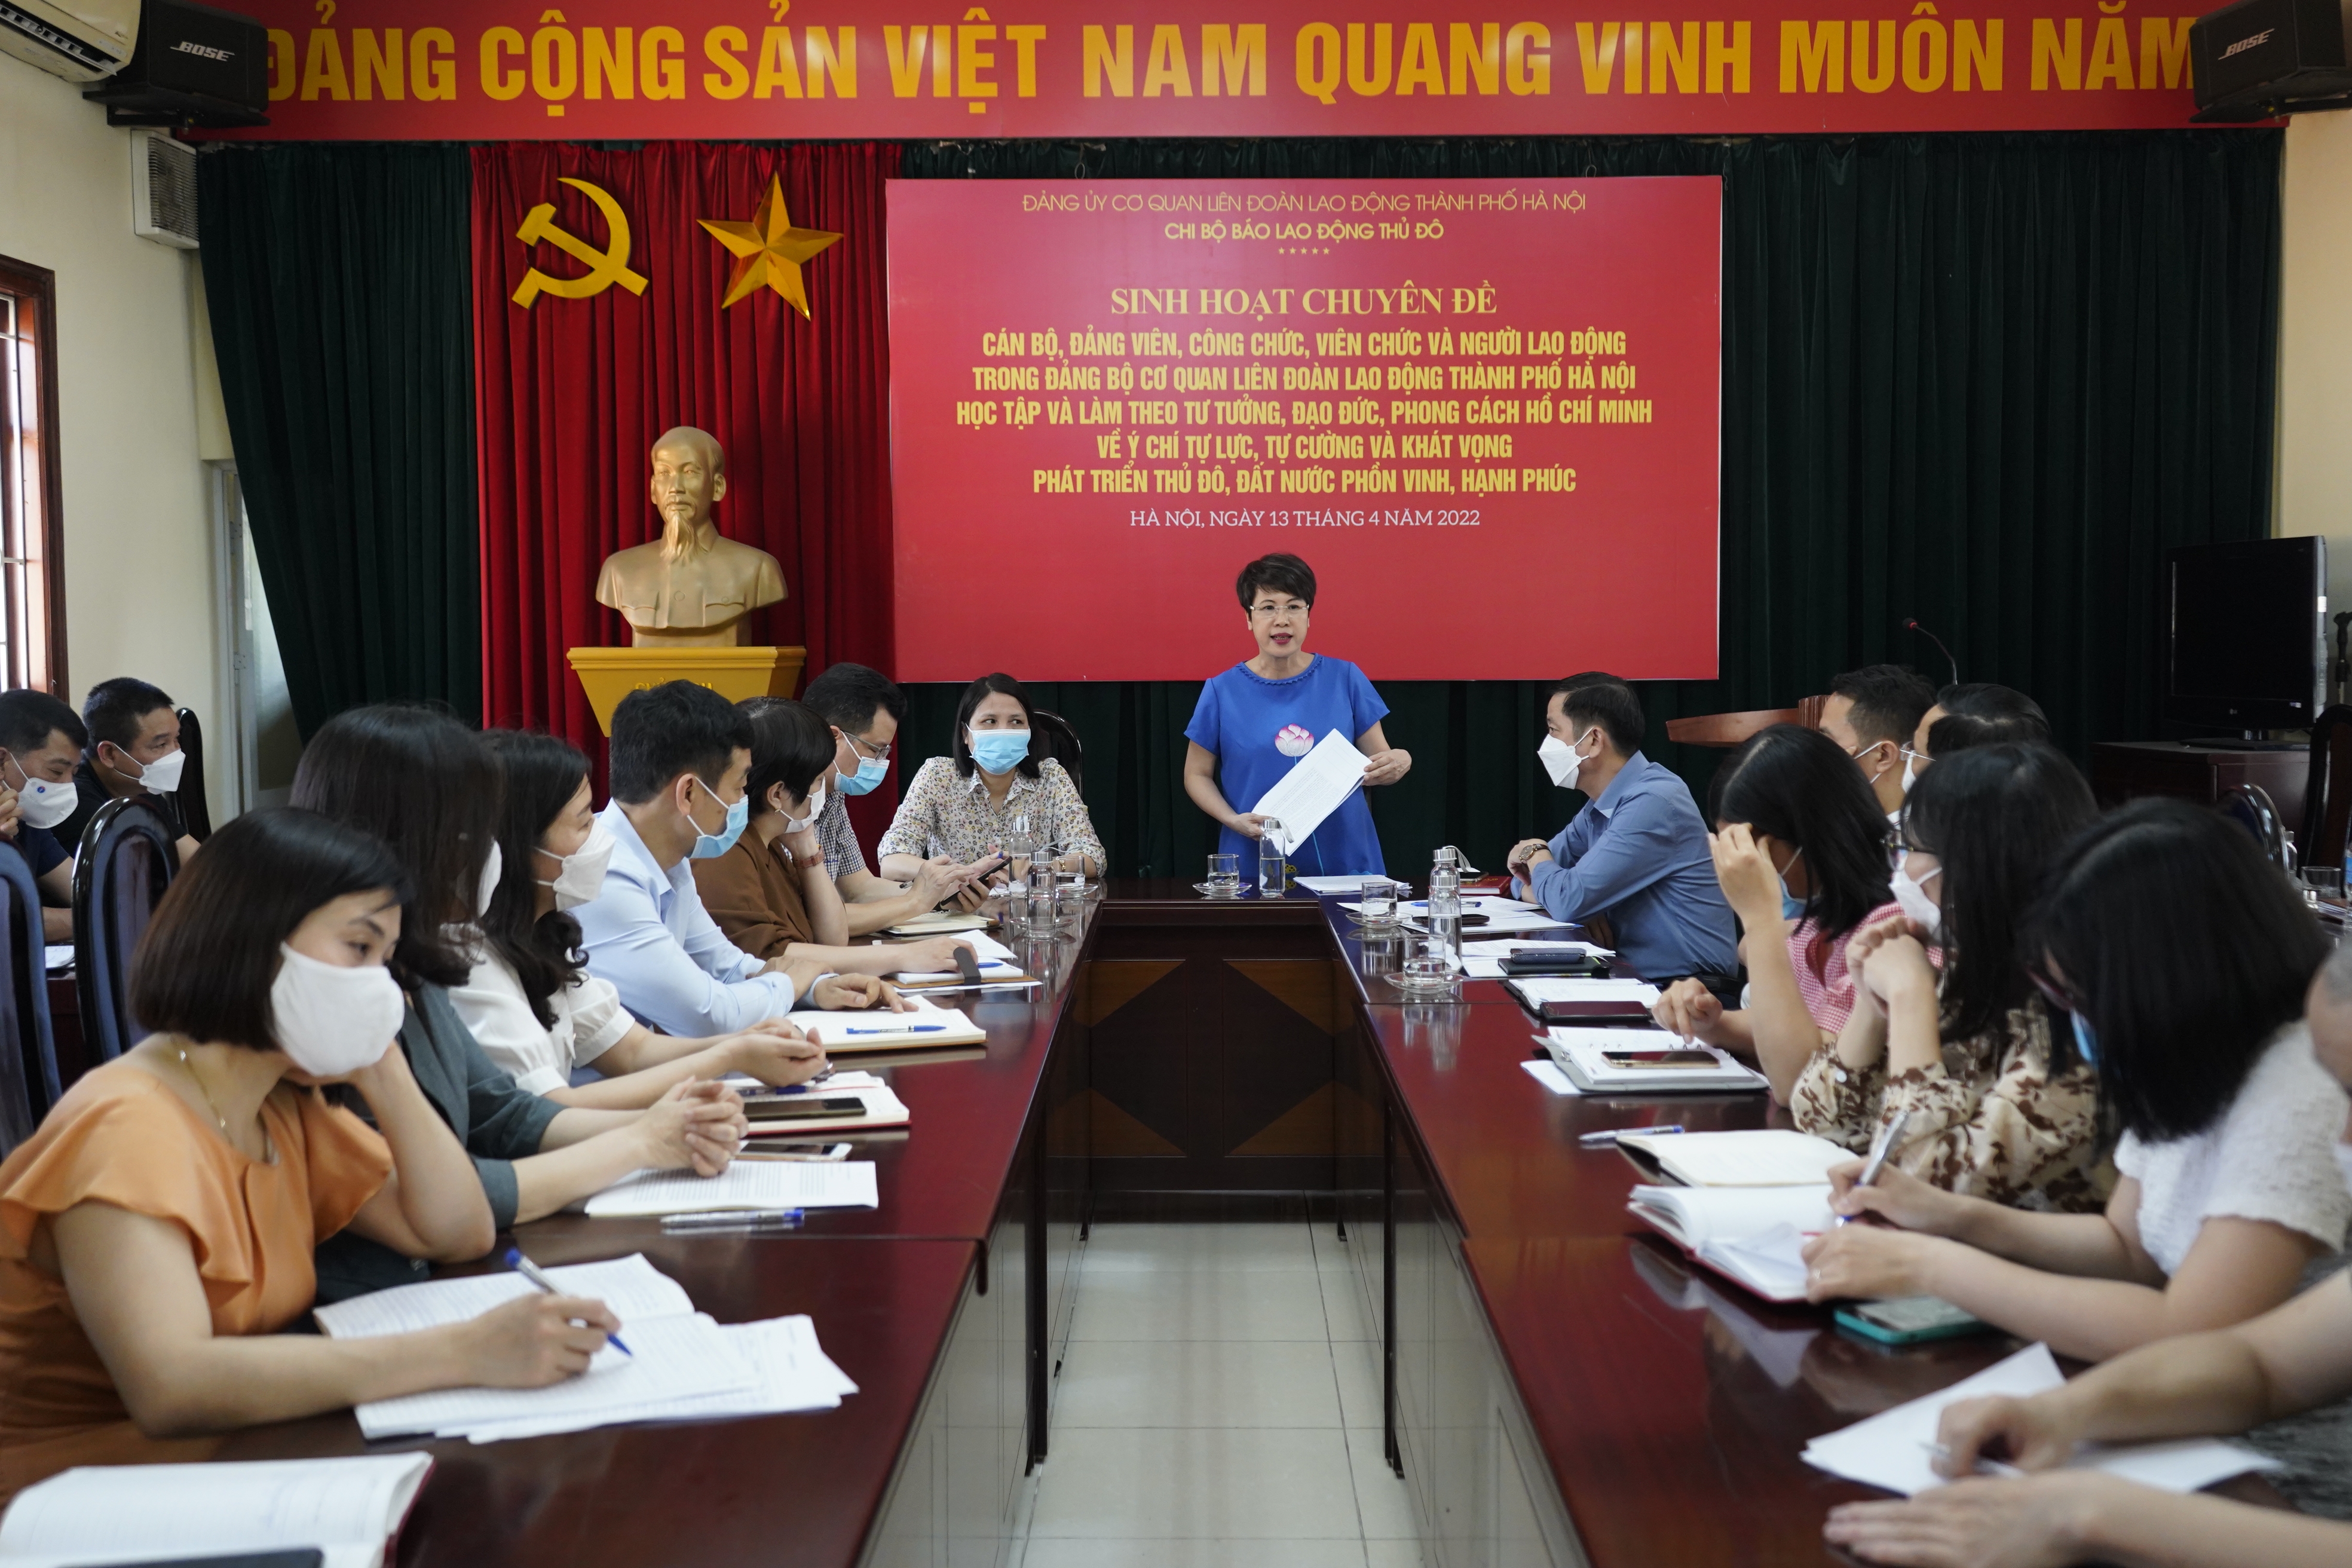 Sinh hoạt chuyên đề học tập và làm theo tư tưởng, đạo đức phong cách Hồ Chí Minh về ý chí tự lực, tự cường